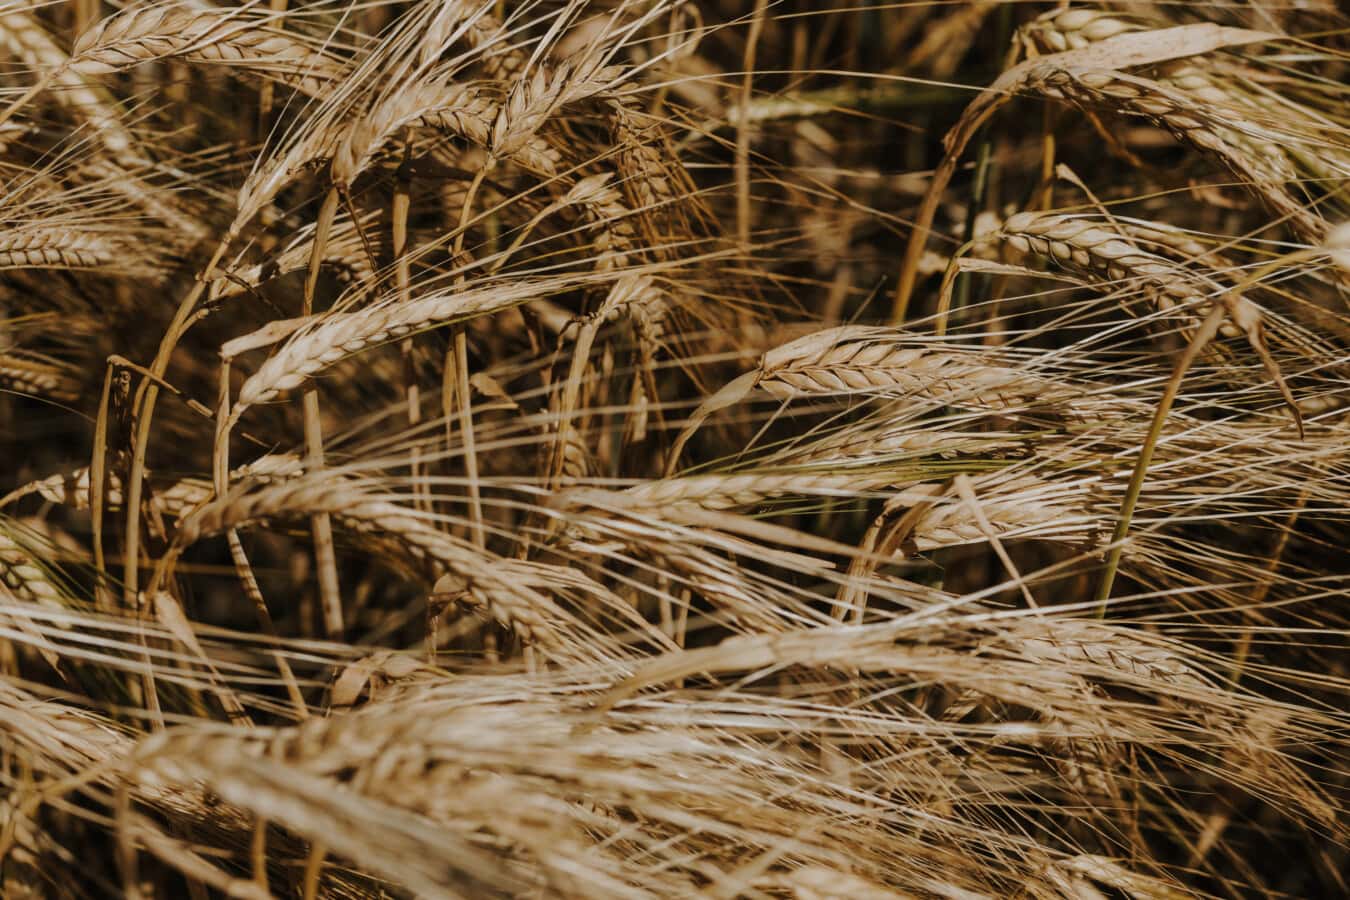 麦田, 种子, 稻草, 近距离, 小麦, 麦片, 旱季, 粮食, 夏天, 面包